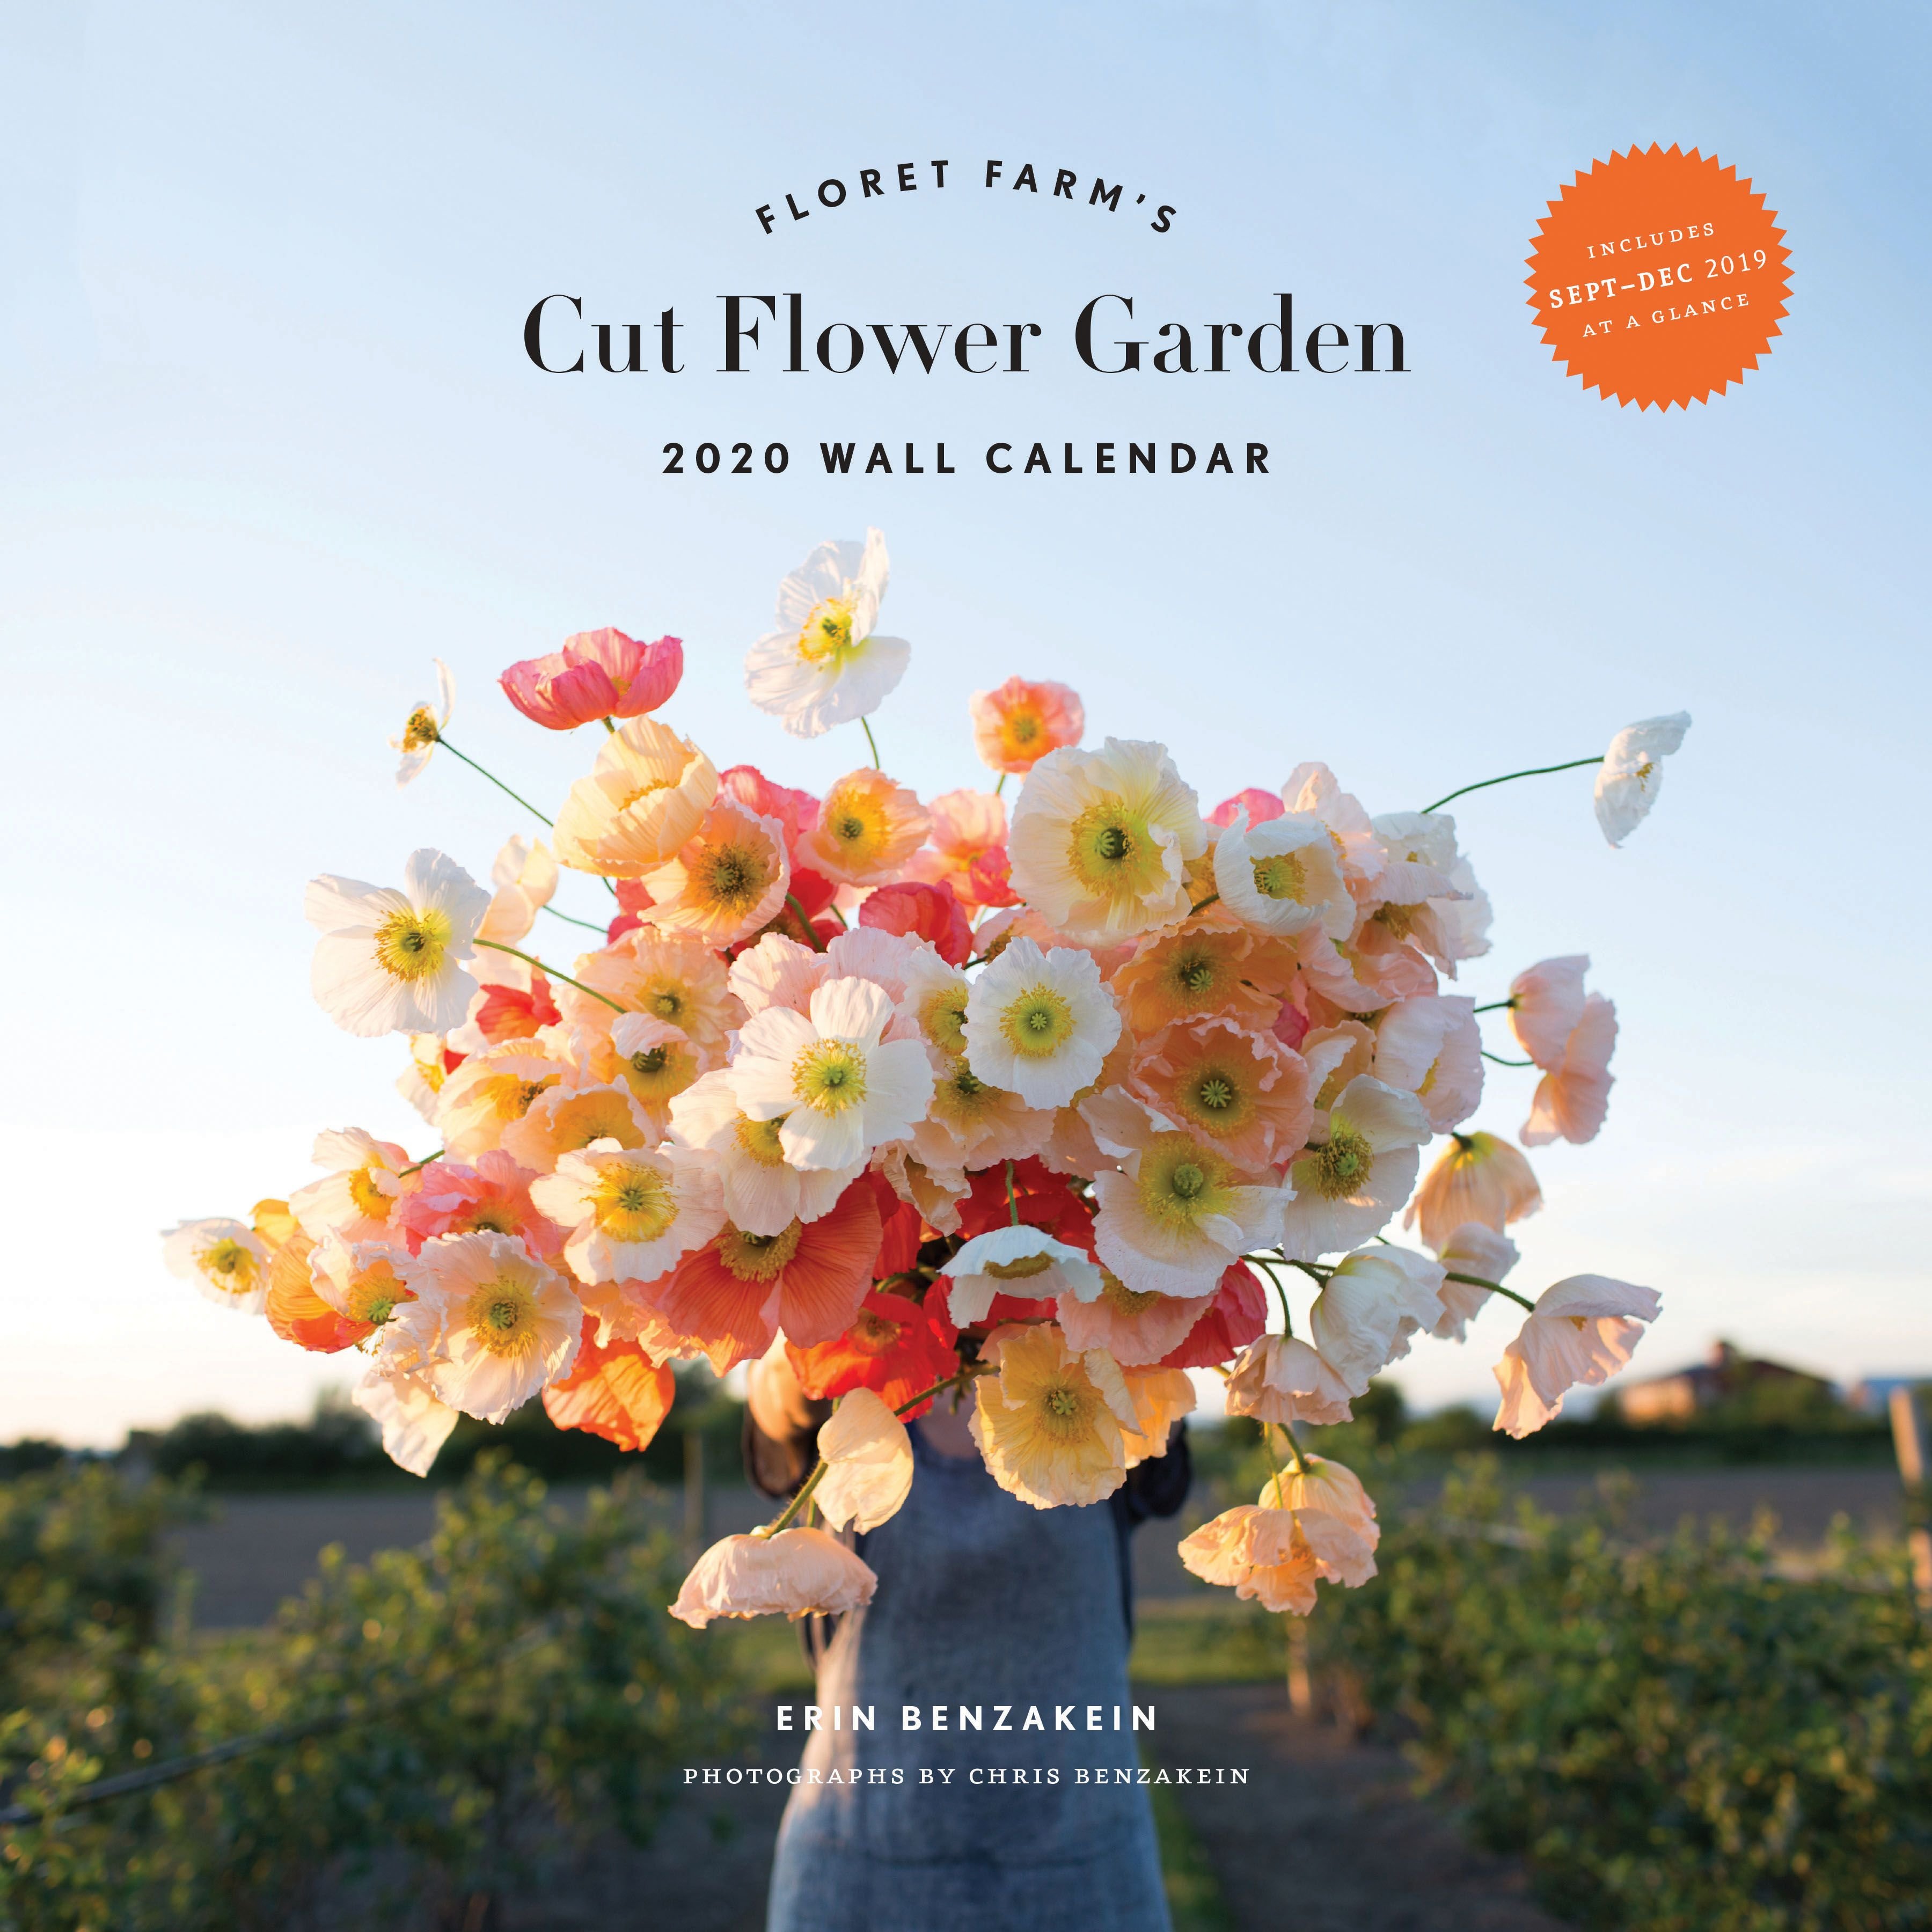 floret farm's cut flower garden: 2020 wall calendar by erin benzakein  (calendar)